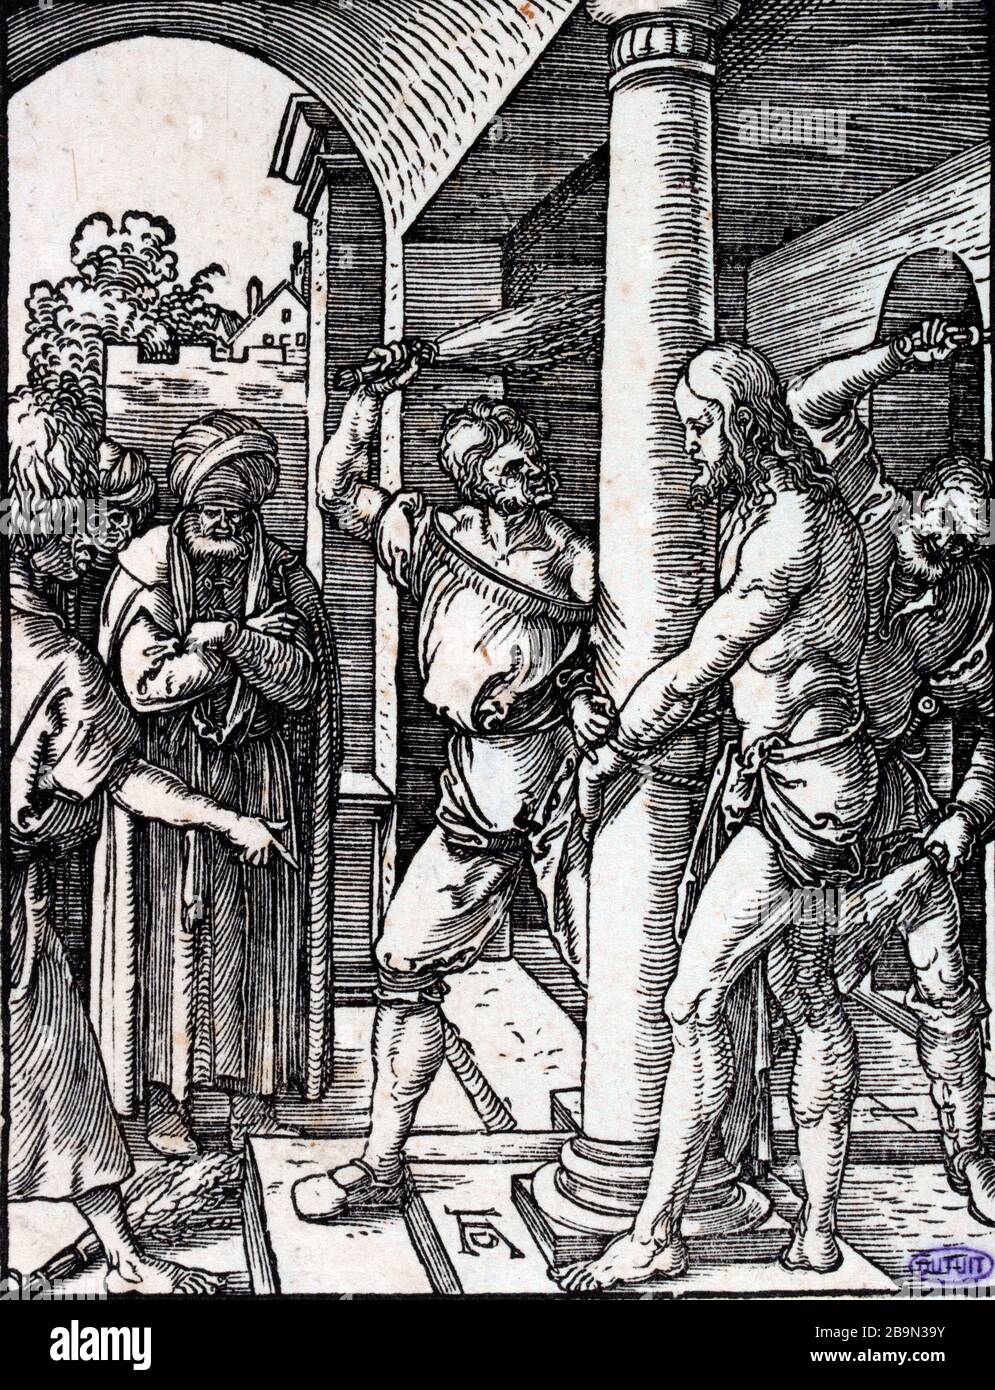 Il CRISTO Albrecht Durer (1471-1528). "La flagellation du Christ", (B 33). Gravure, XVIème. Musée des Beaux-Arts de la Ville de Paris, Petit Palais. Foto Stock